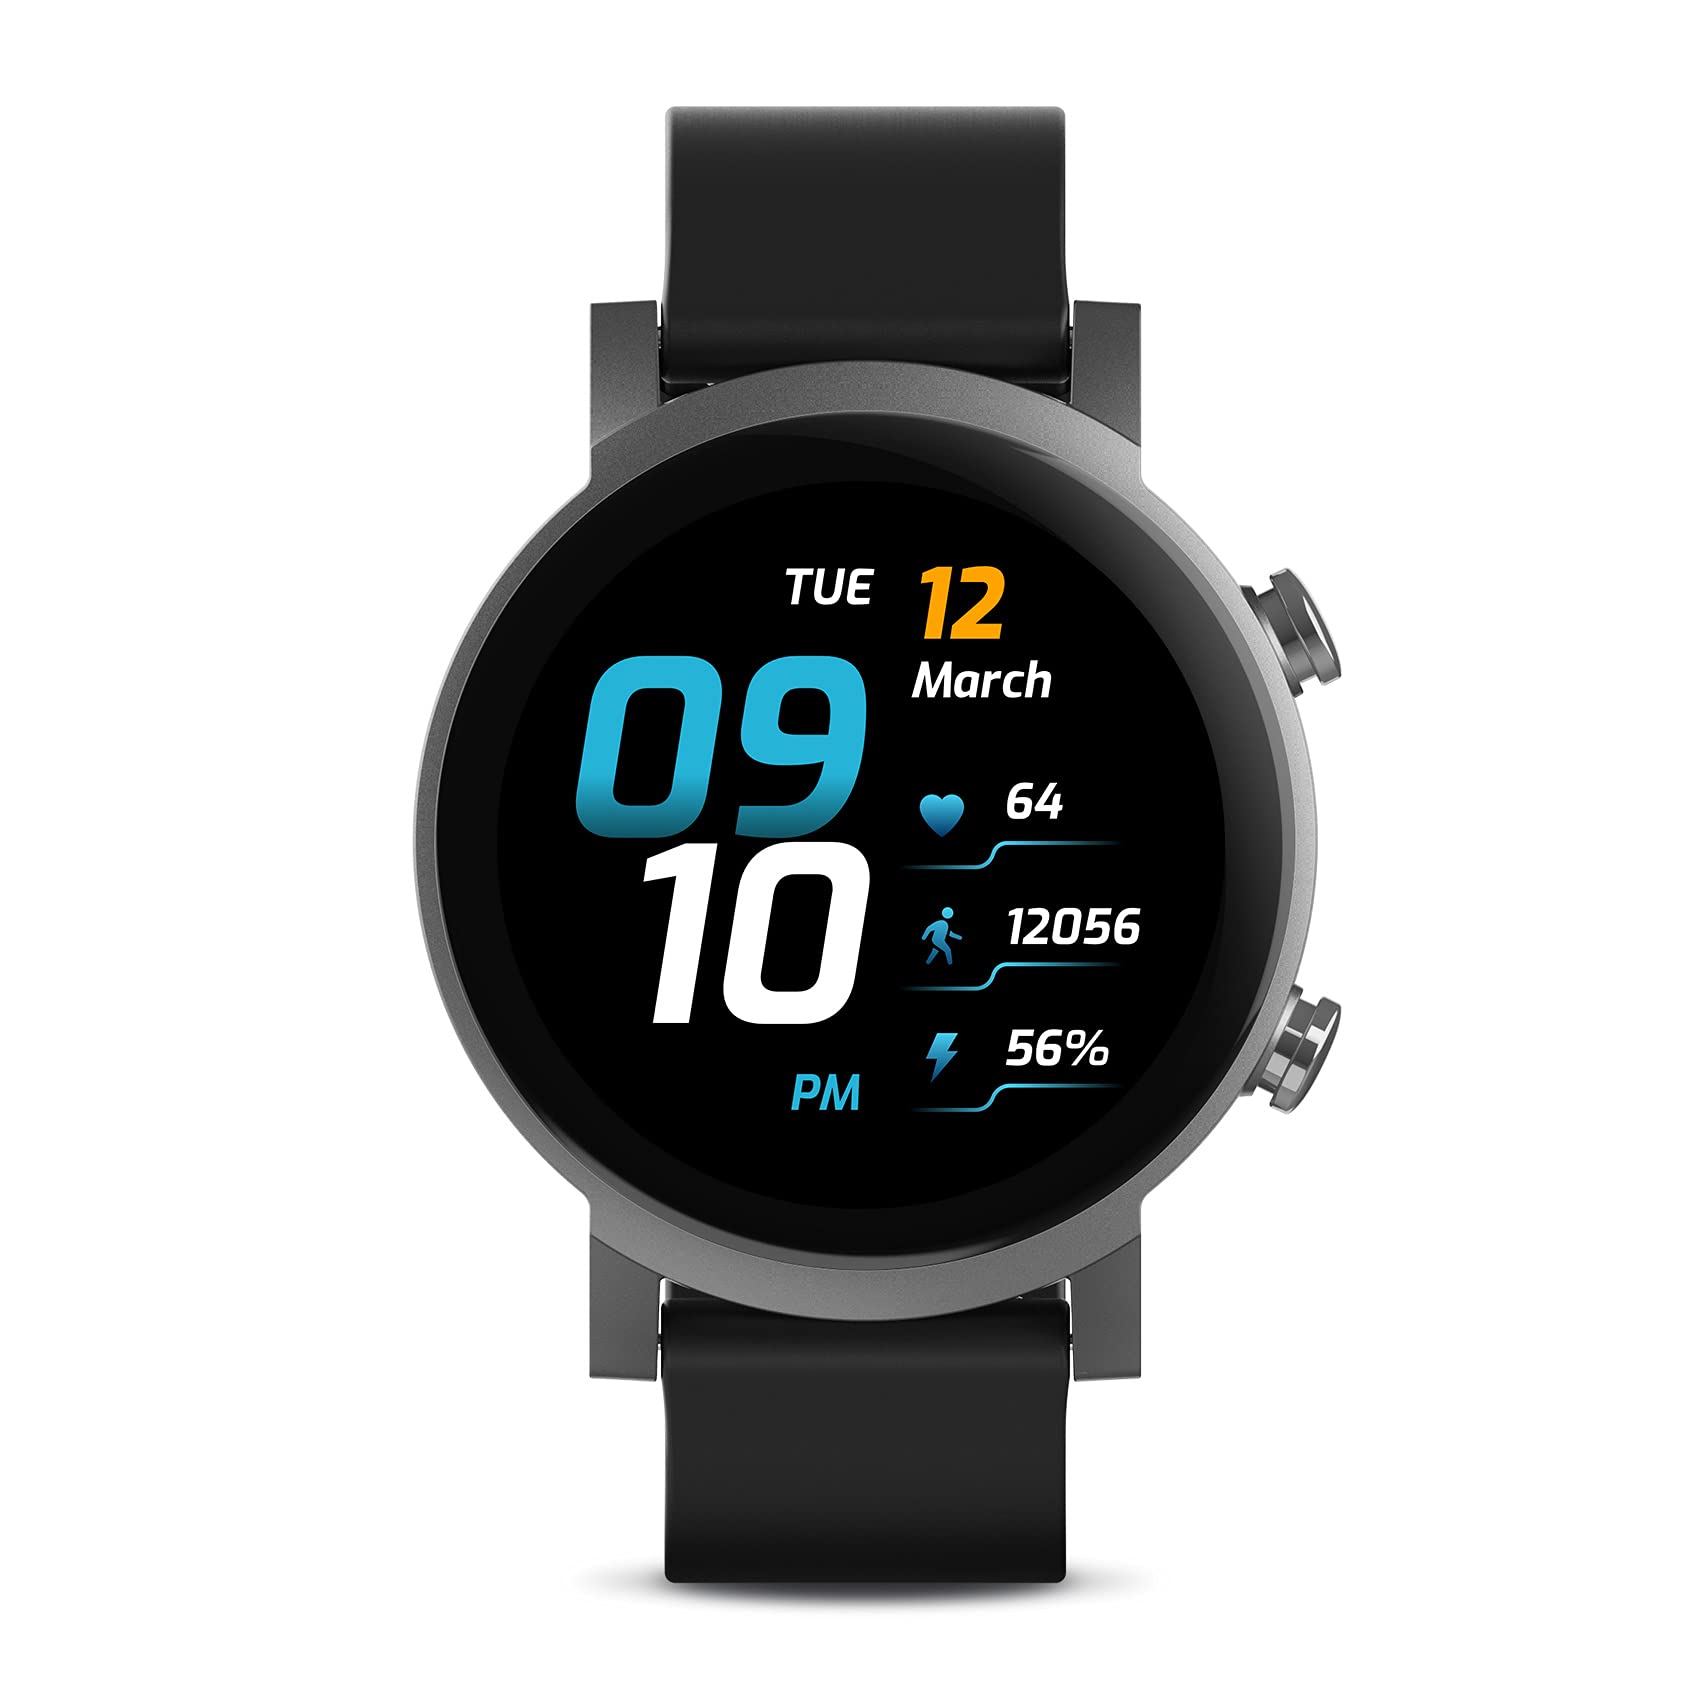  Ticwatch Inteligentny zegarek E3 Wear OS firmy Google dla mężczyzn Kobiety Qualcomm Snapdragon Wear 4100 Platforma Monitor stanu zdrowia Tracker fitness GPS NFC Mic Głośnik IP68 Wodoodporny iOS...